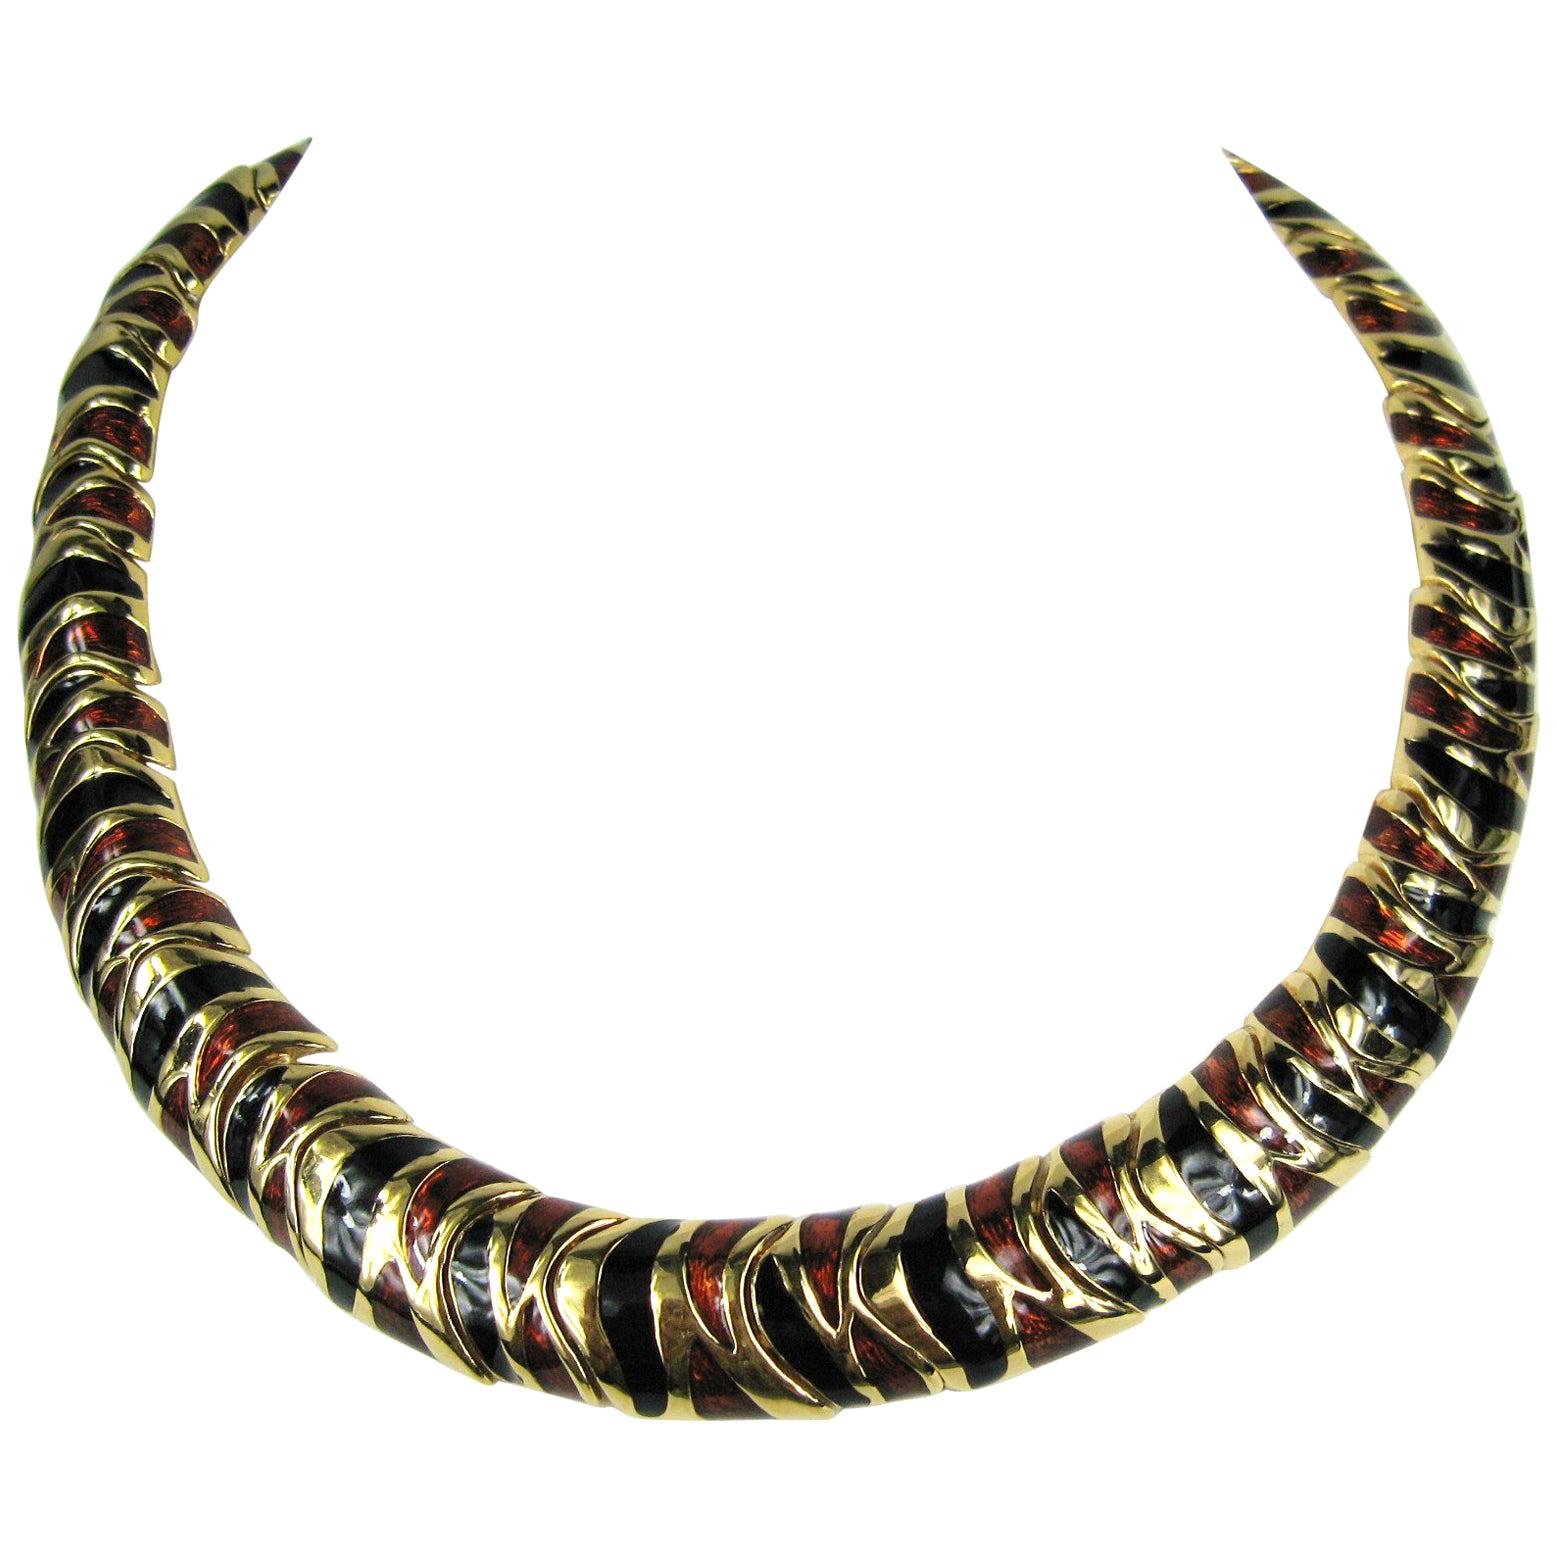  Ciner Bronze & Black Enameled Necklace New, Never Worn 1980s 